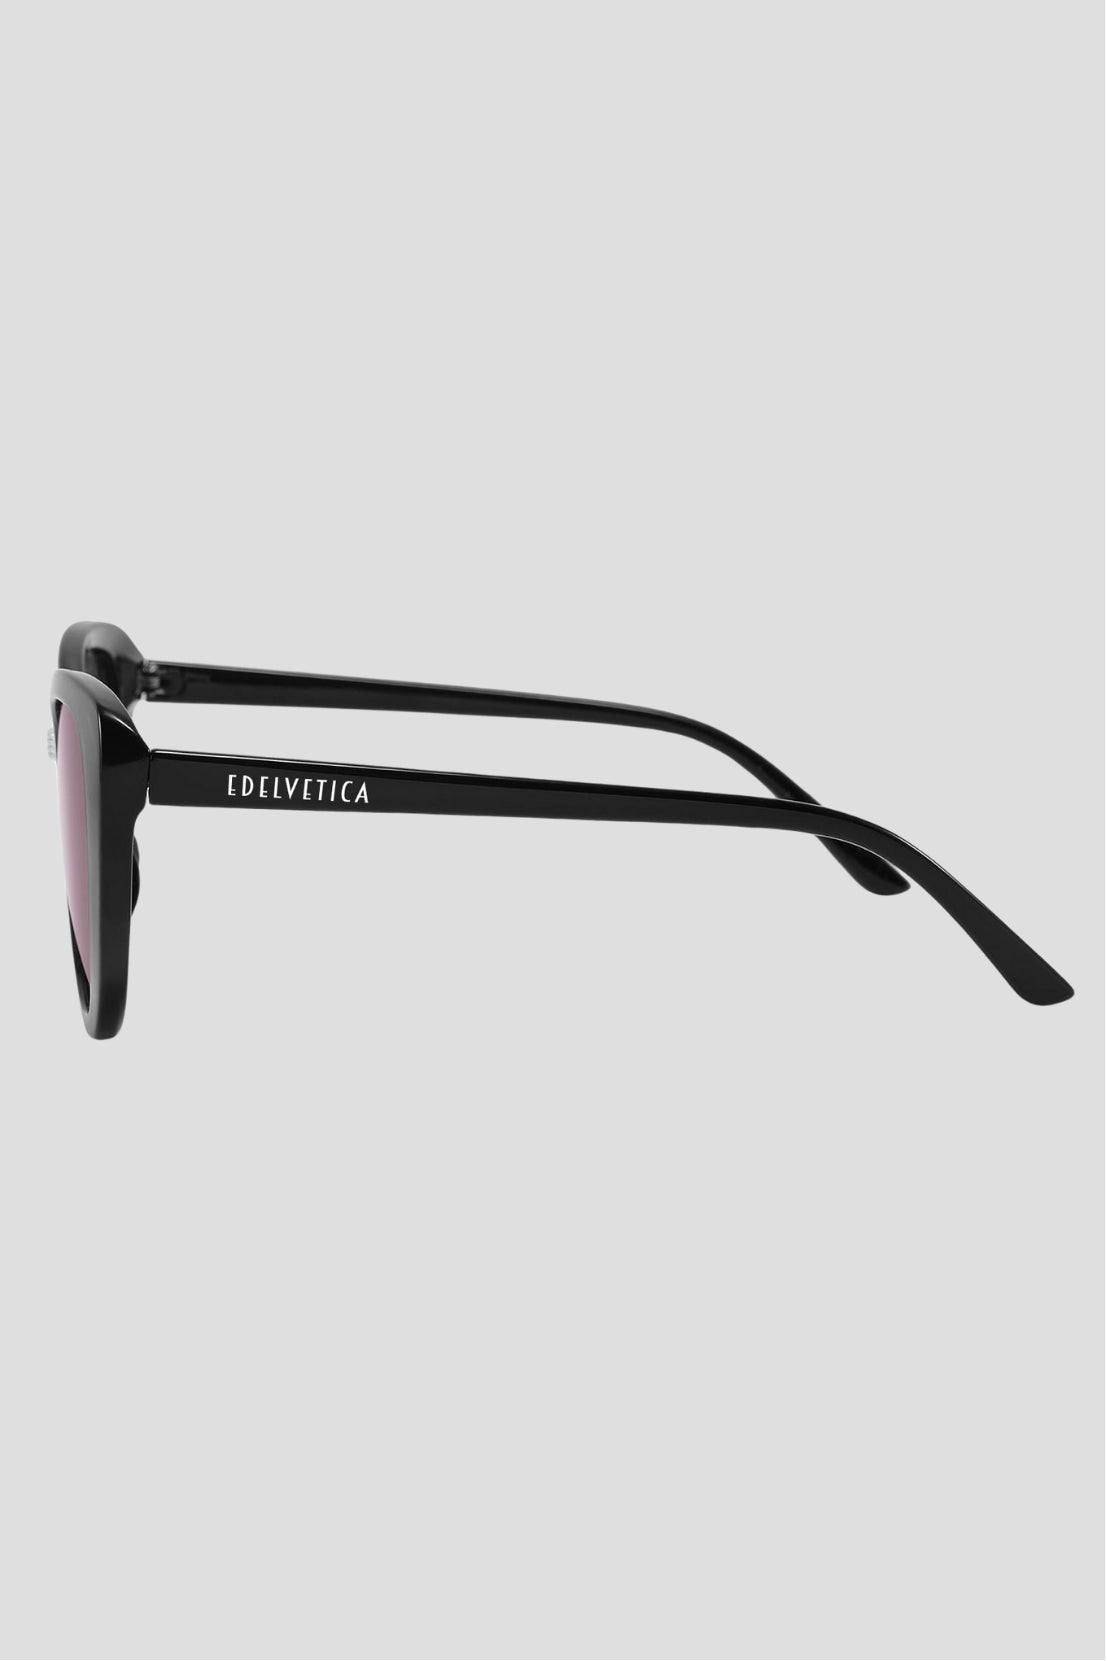 Damen Sonnenbrille 'Cat Eye Rund' von Edelvetica, eine modische und elegante Sonnenbrille. Dieses Modell kombiniert das klassische Cat-Eye-Design mit einer runden Form, was einen zeitgenössischen und femininen Look schafft. Ideal für stilbewusste Frauen, die ein Accessoire suchen, das sowohl Trendbewusstsein als auch einen Hauch von Vintage-Appeal bietet.